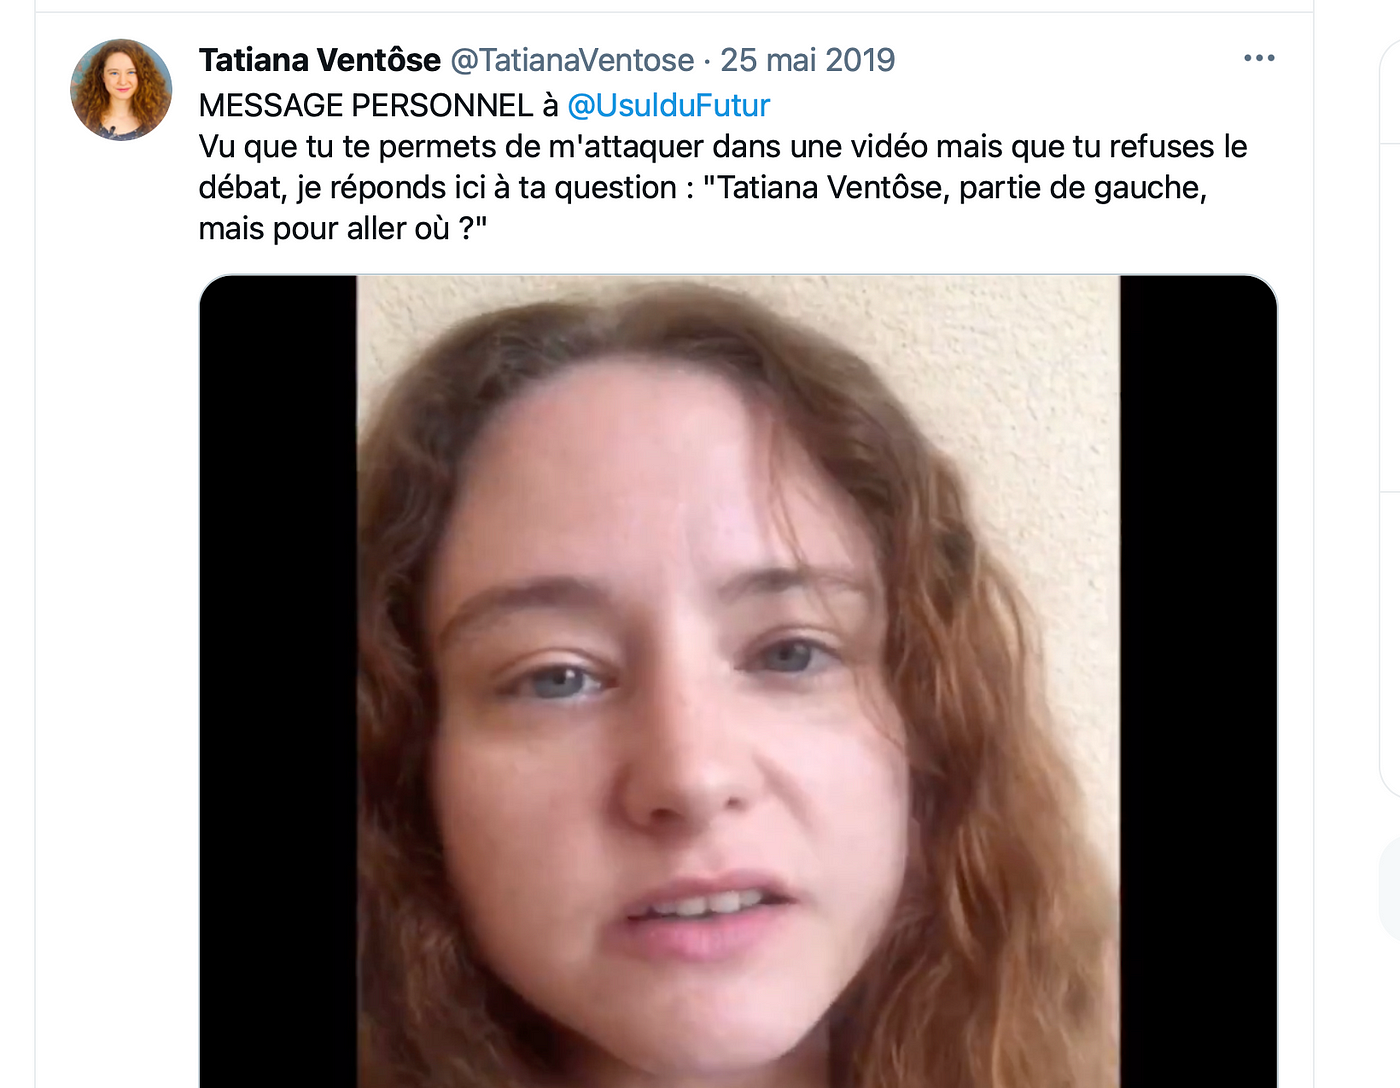 Tweet de Tatiana Ventose disant “vu que tu te permets de m’attaquer dans une vidéo mais que tu refuses le débats, je réponds ici à ta question”